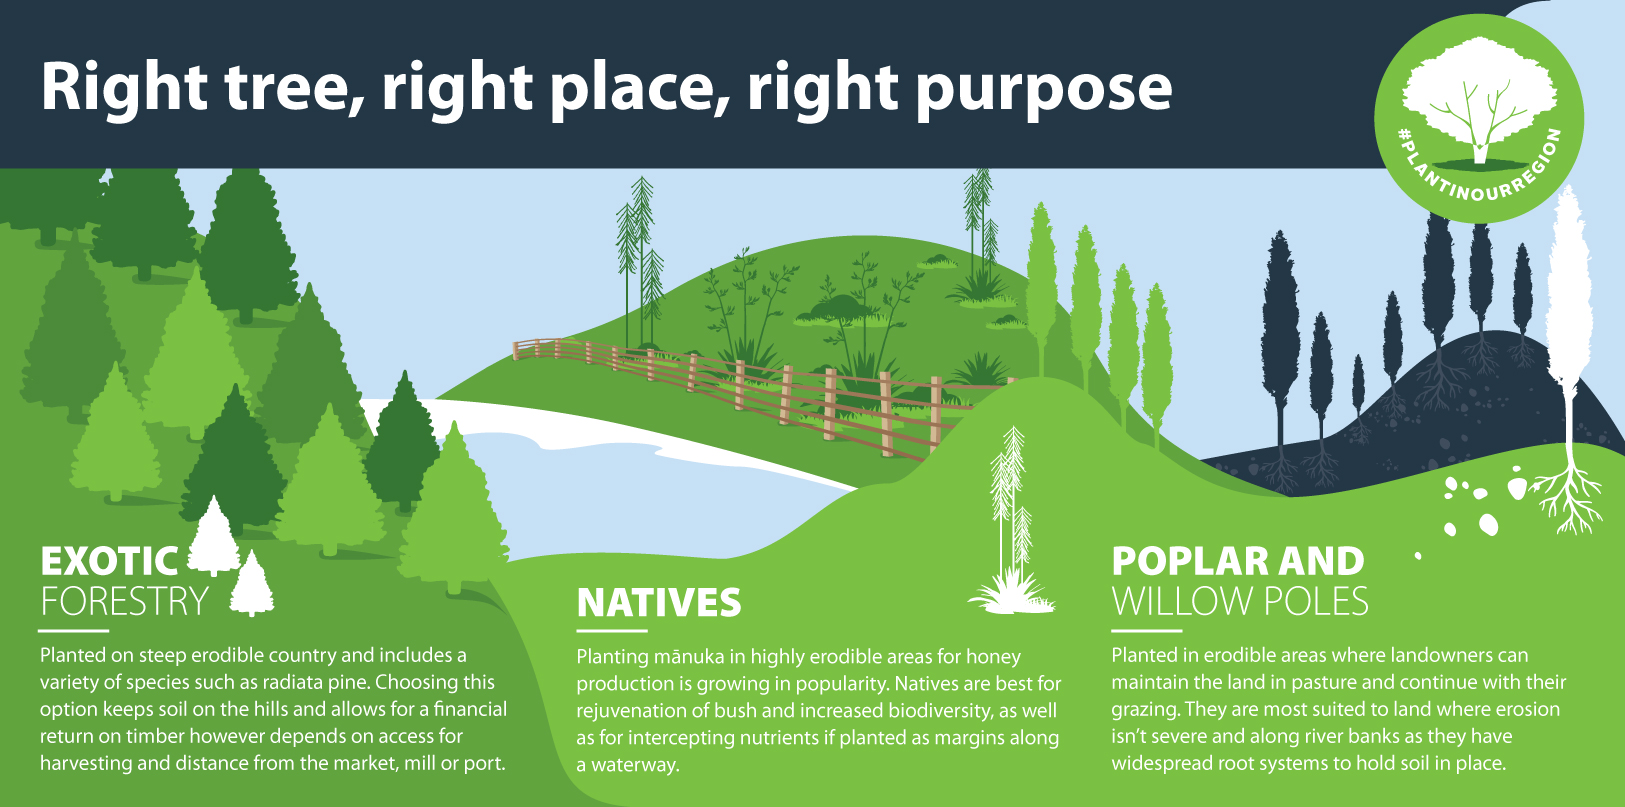 #PlantInOurRegion - Right tree, right place, right purpose